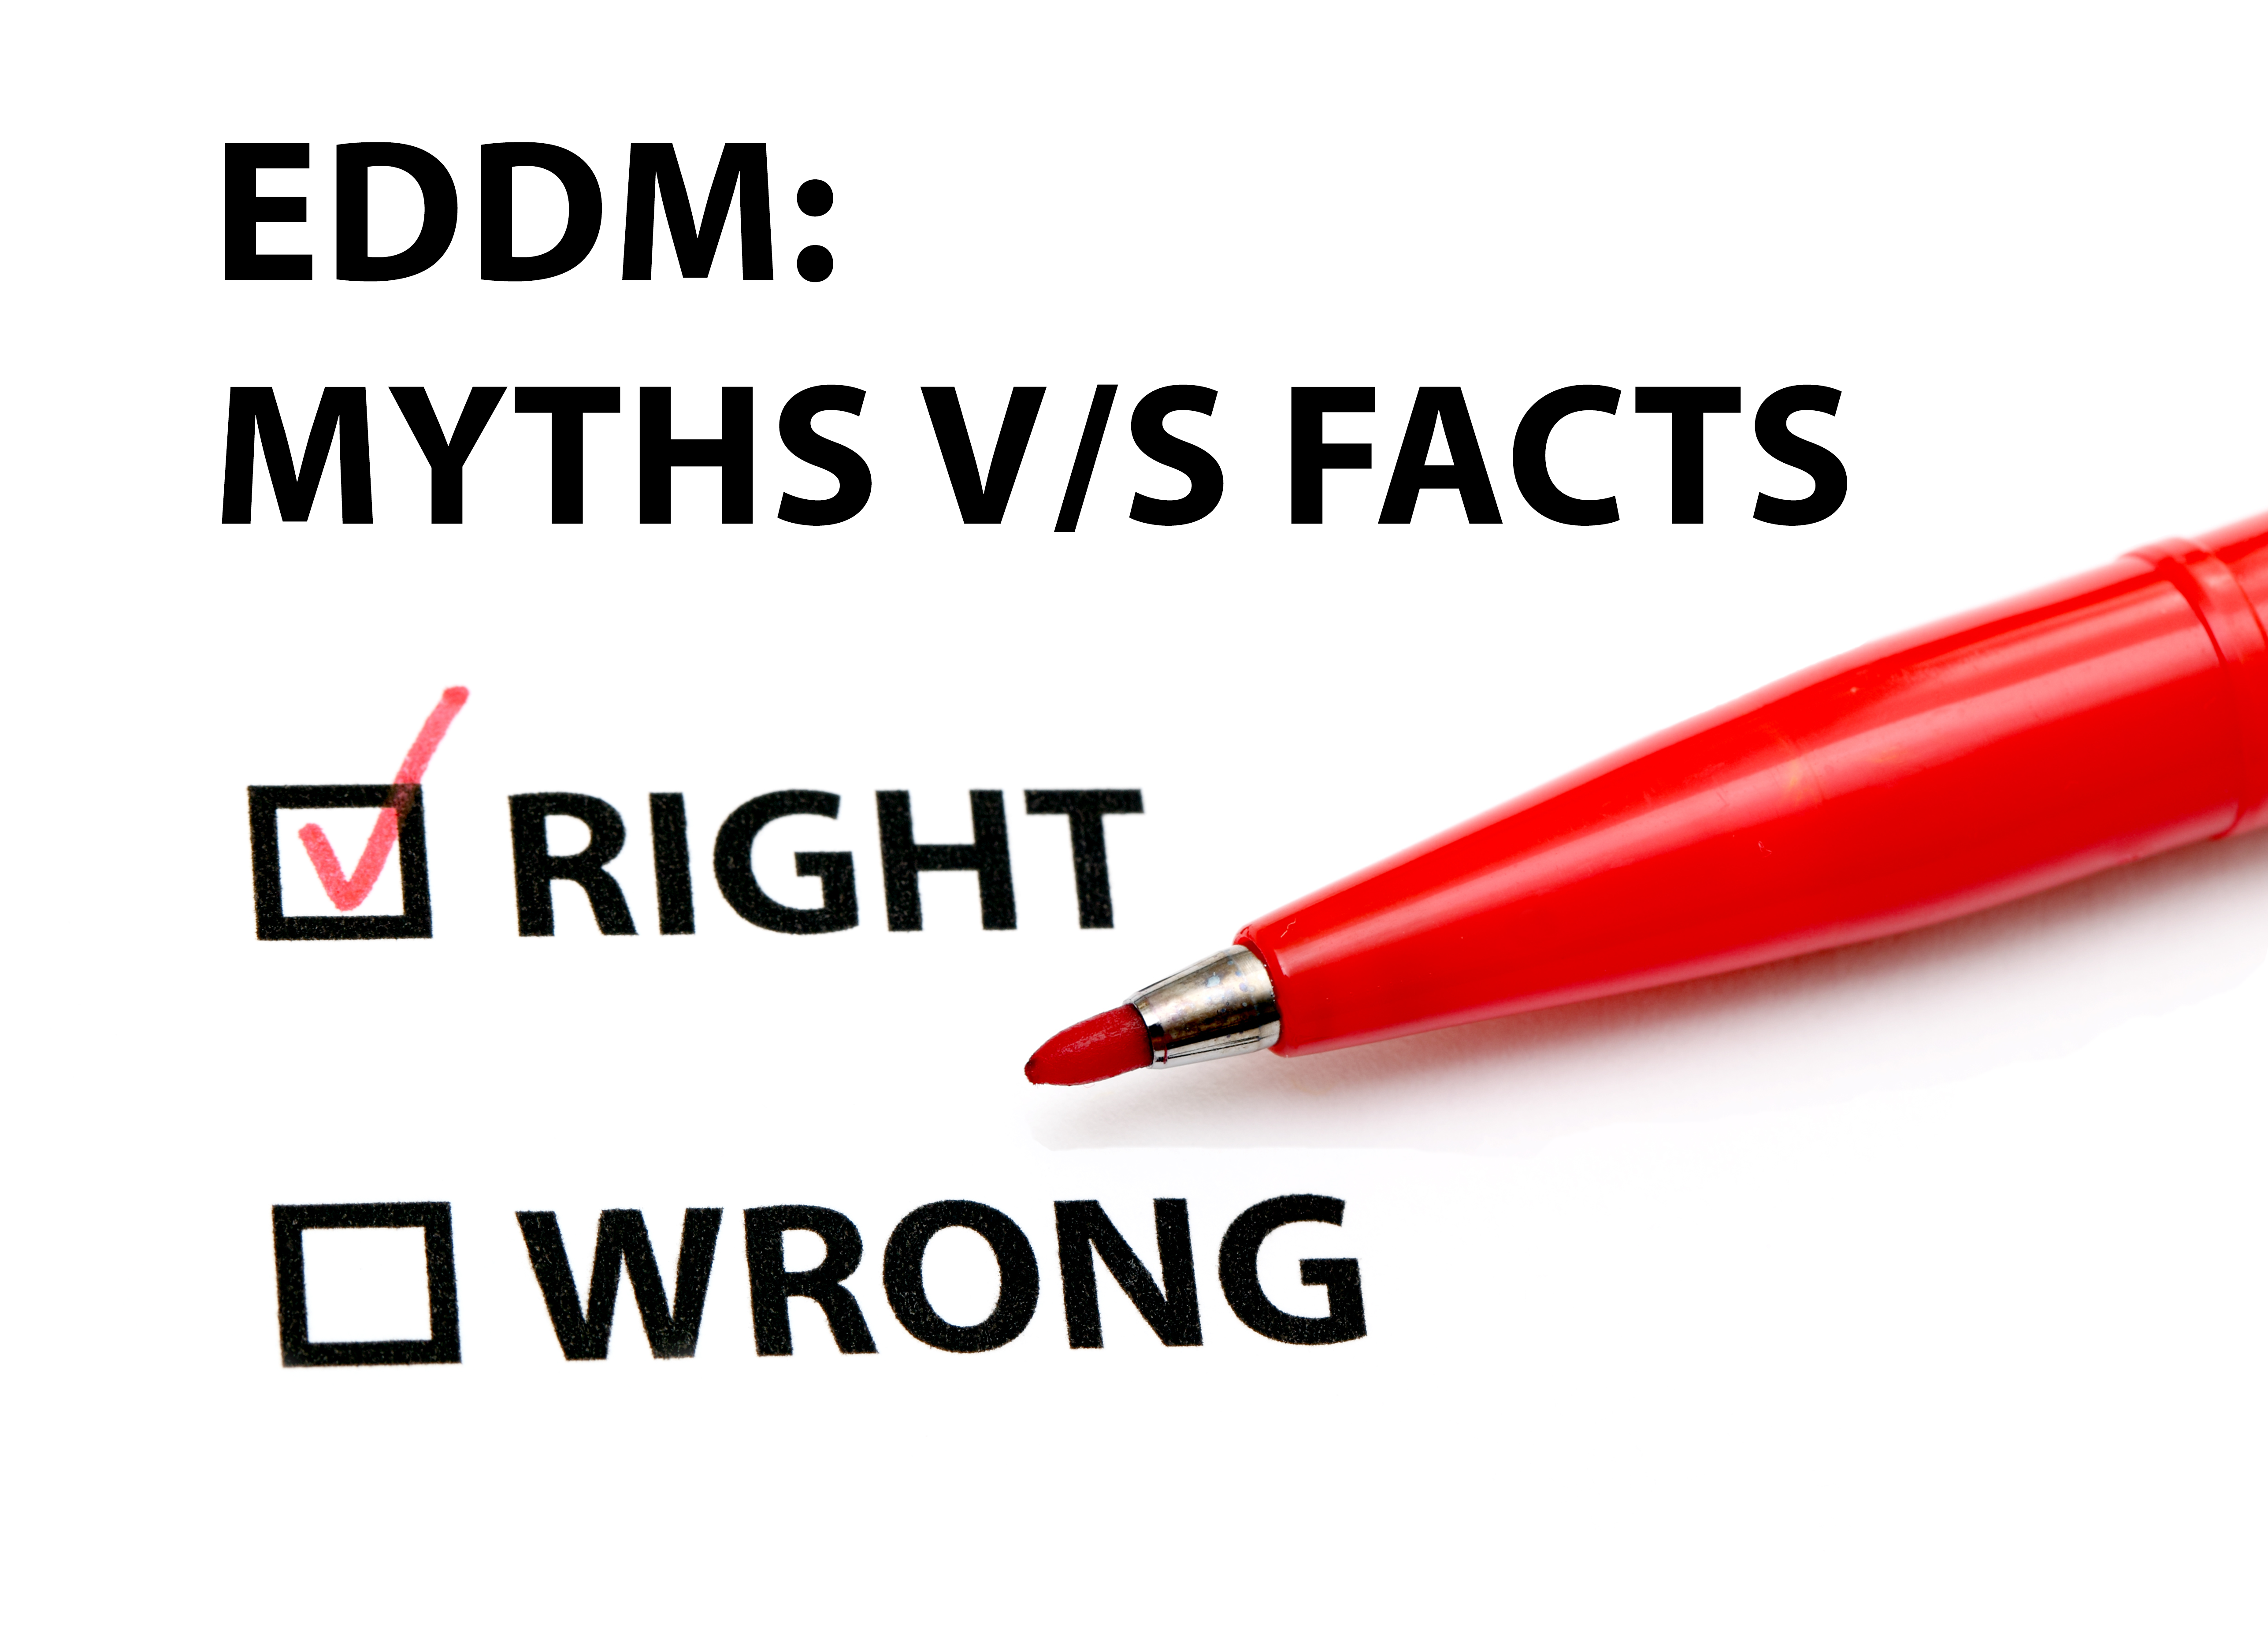 eddm myths and facts